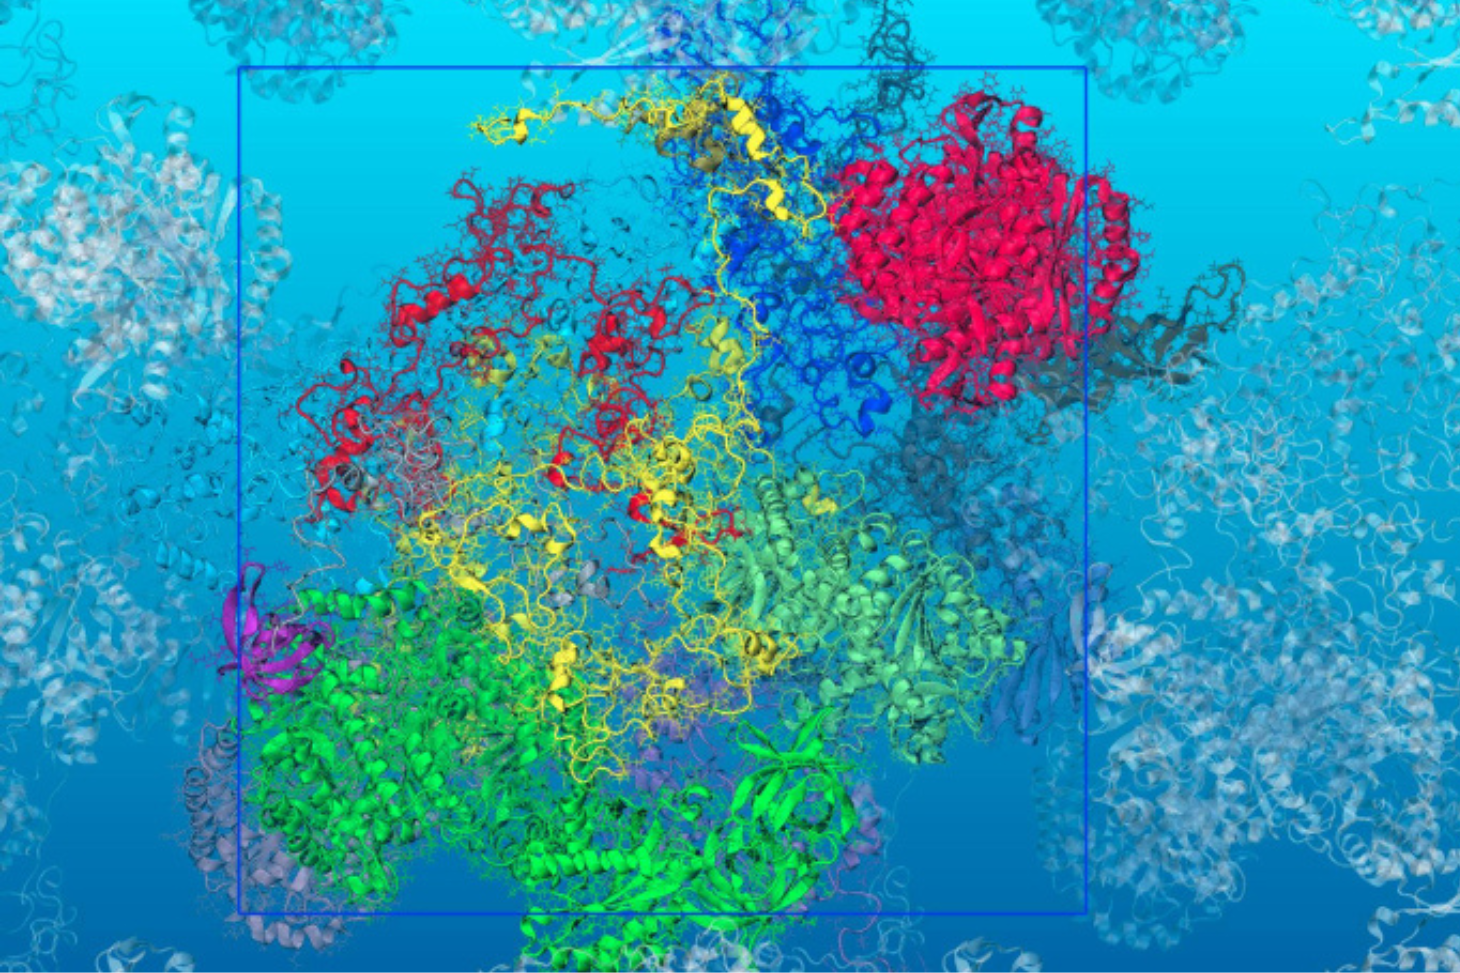 À l'approche de la température de la mort cellulaire, les simulations de dynamique moléculaire multi-échelle prédisent un dépliement de certaines protéines qui changent dramatiquement la viscosité du milieu cellulaire. © Fabio Sterpone